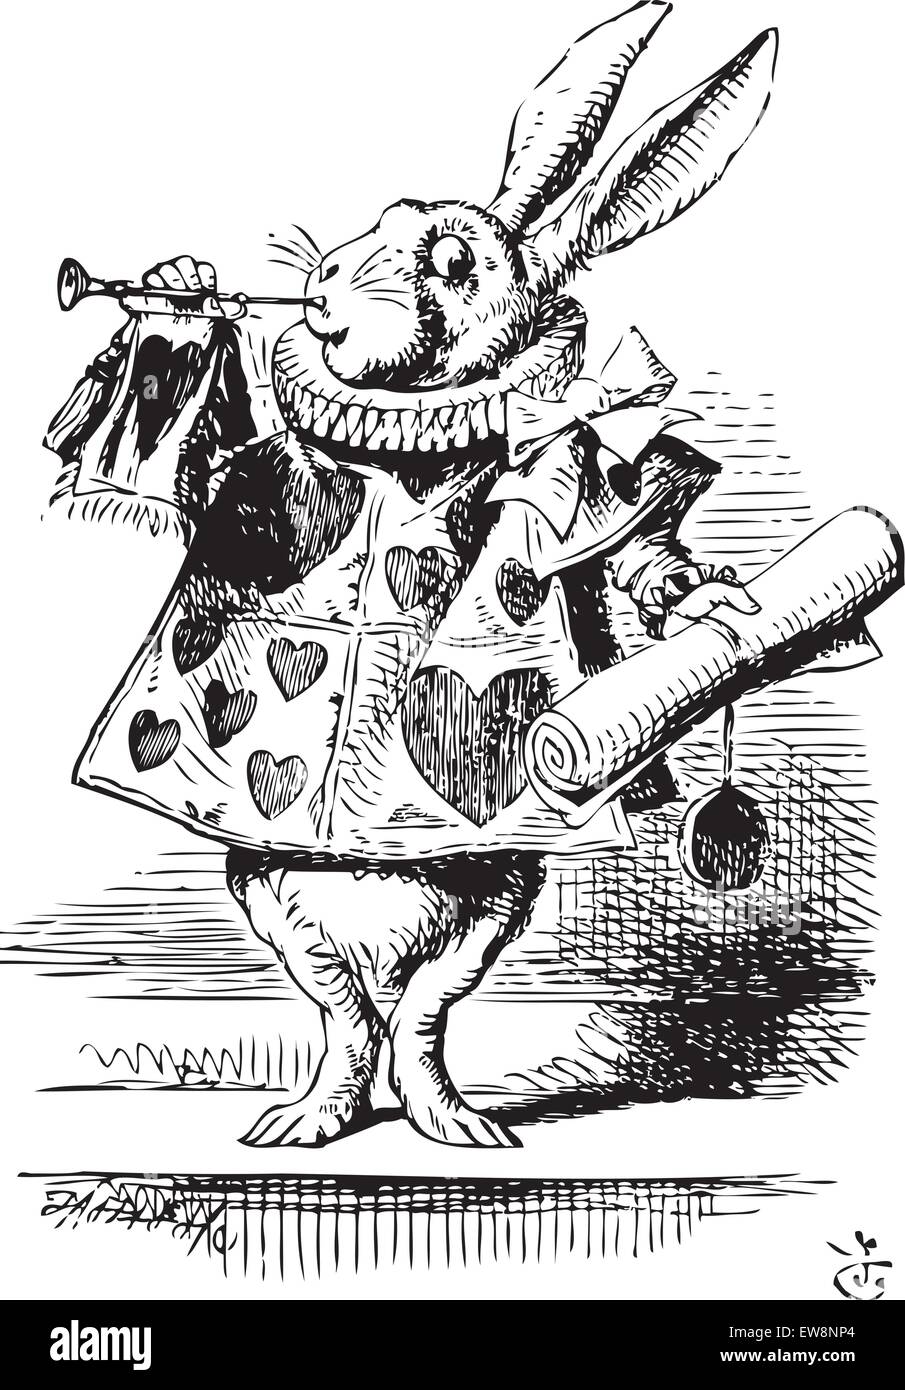 White Rabbit, gekleidet wie ein Herold, Blasen Trompete - Alice's Adventures in Wonderland original vintage Gravur. In der Nähe der King war das weiße Kaninchen mit Trompete in der einen Hand und eine Rolle Pergament in der anderen. Abbildung kann von John Tenniel, im Jahre 1865 veröffentlicht. Stock Vektor